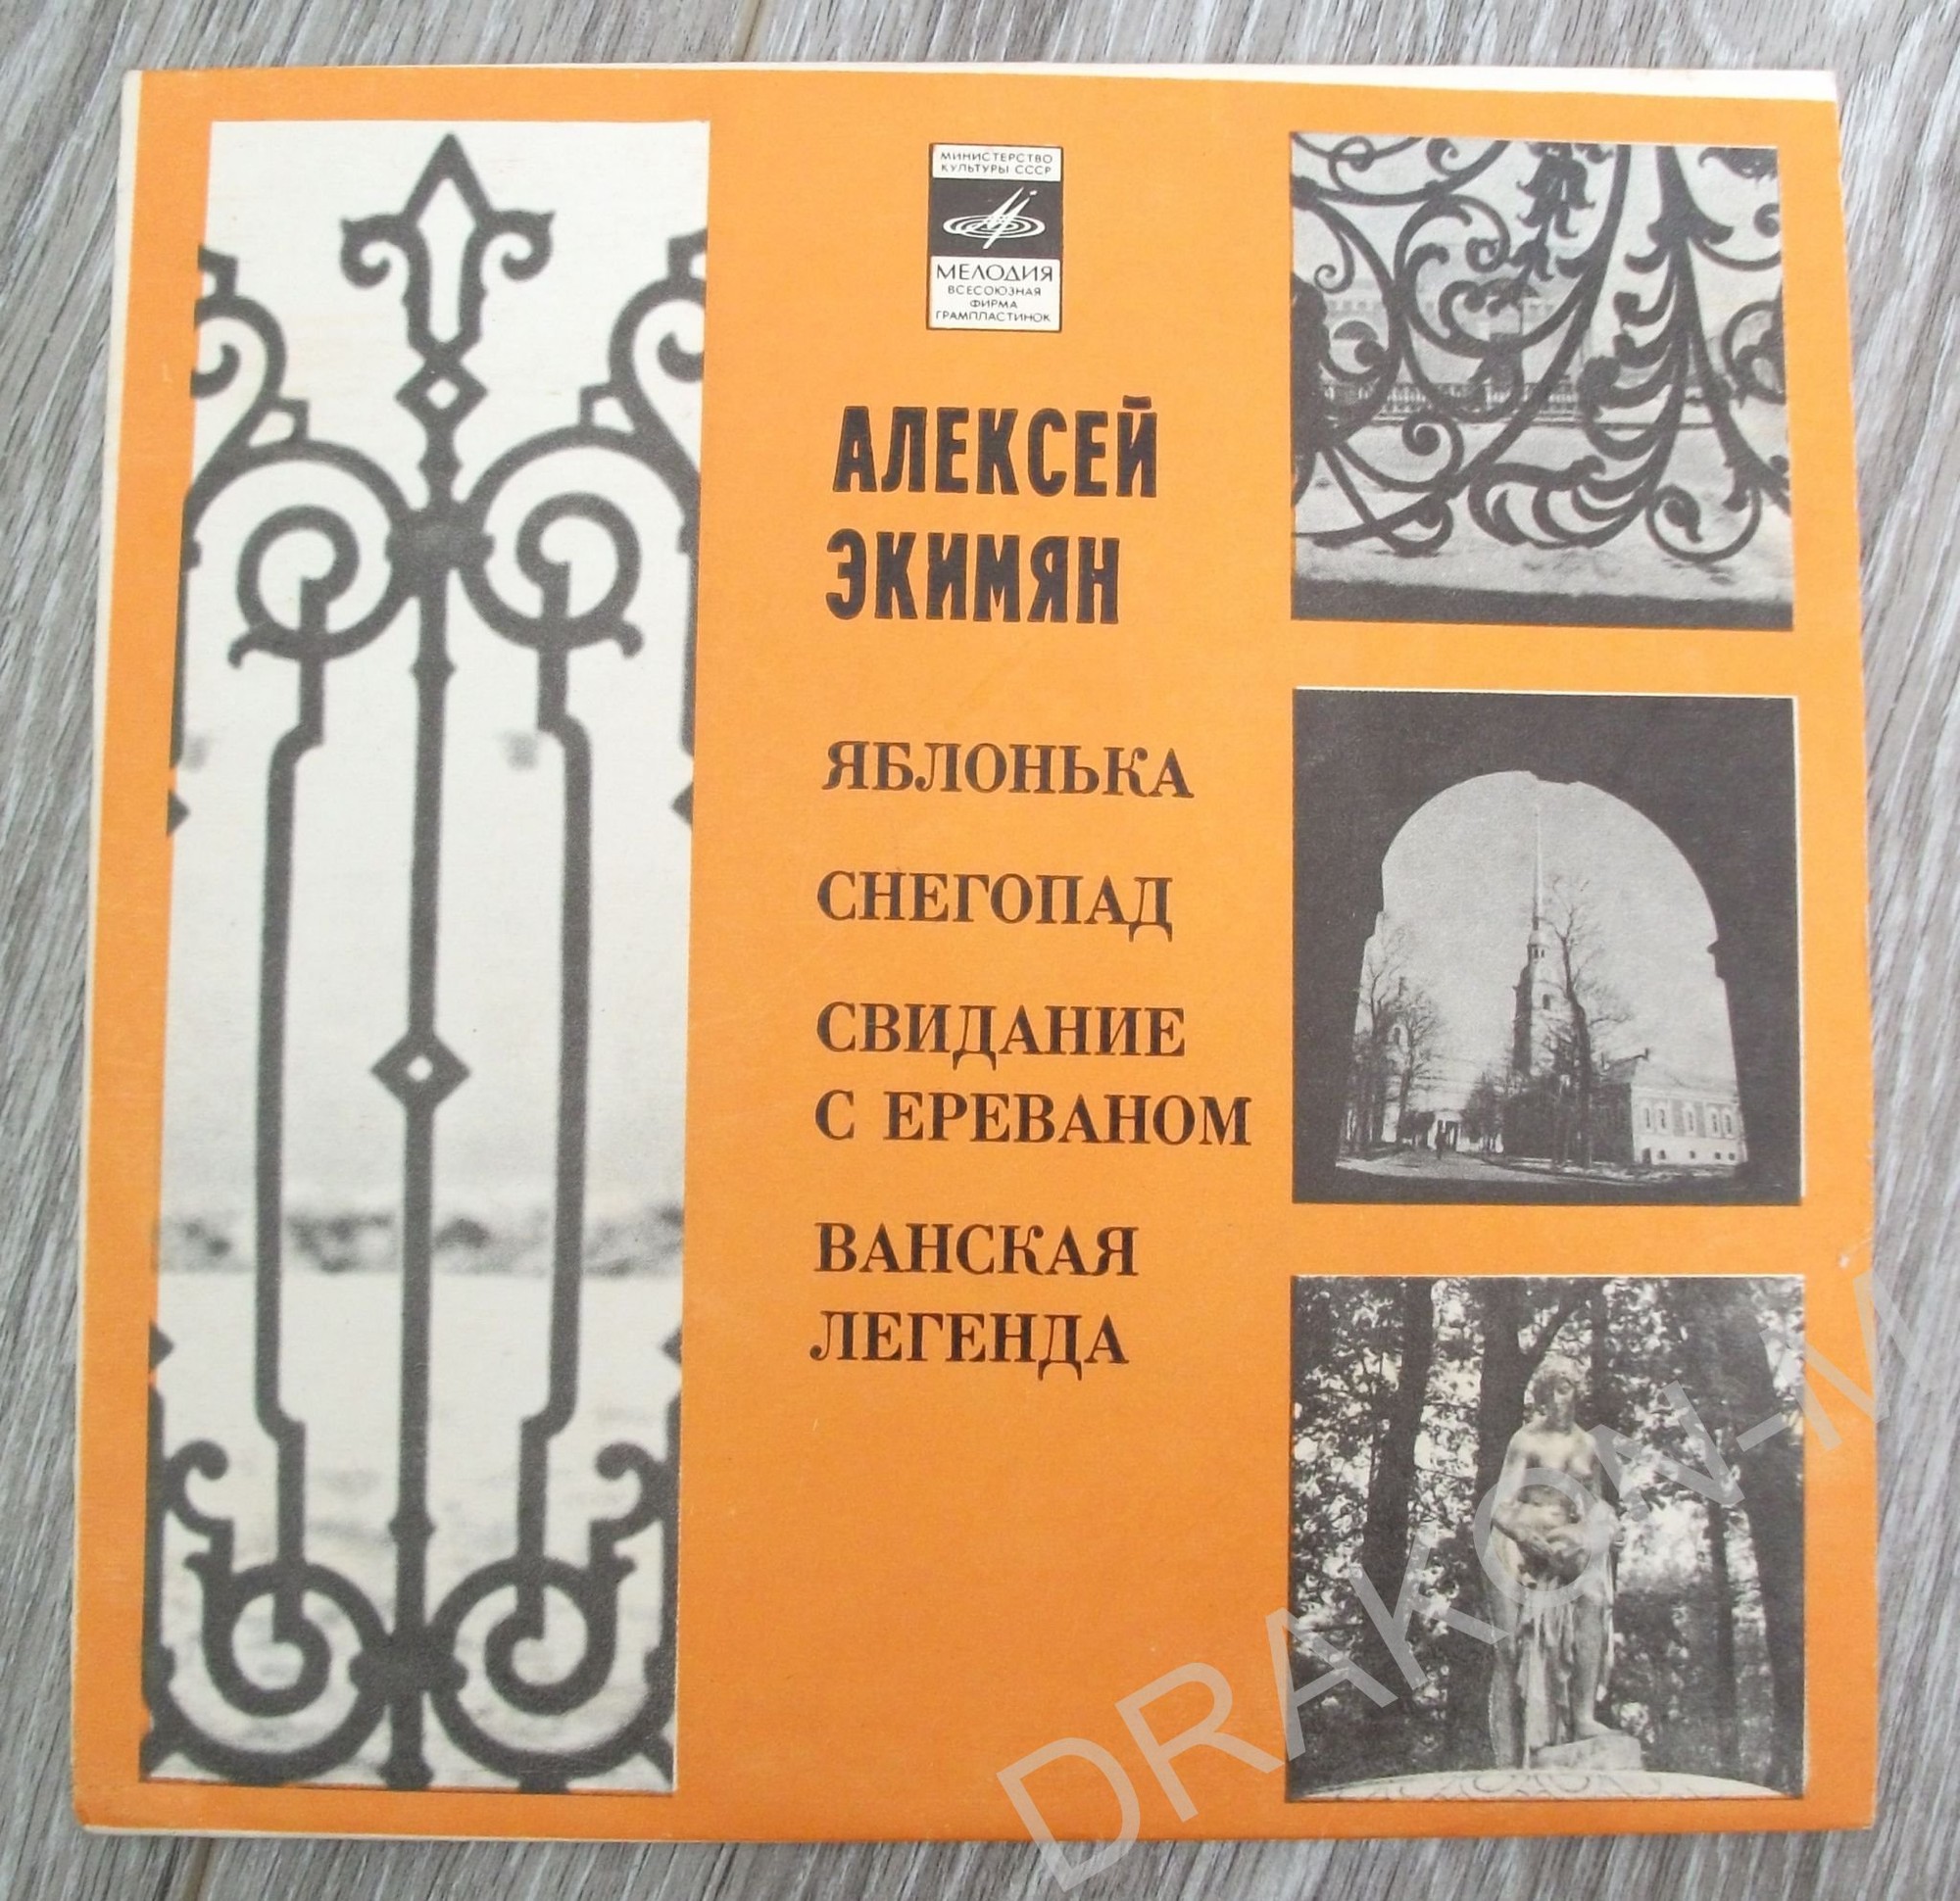 А. ЭКИМЯН (1927–1982) «Песни и инструментальная музыка»